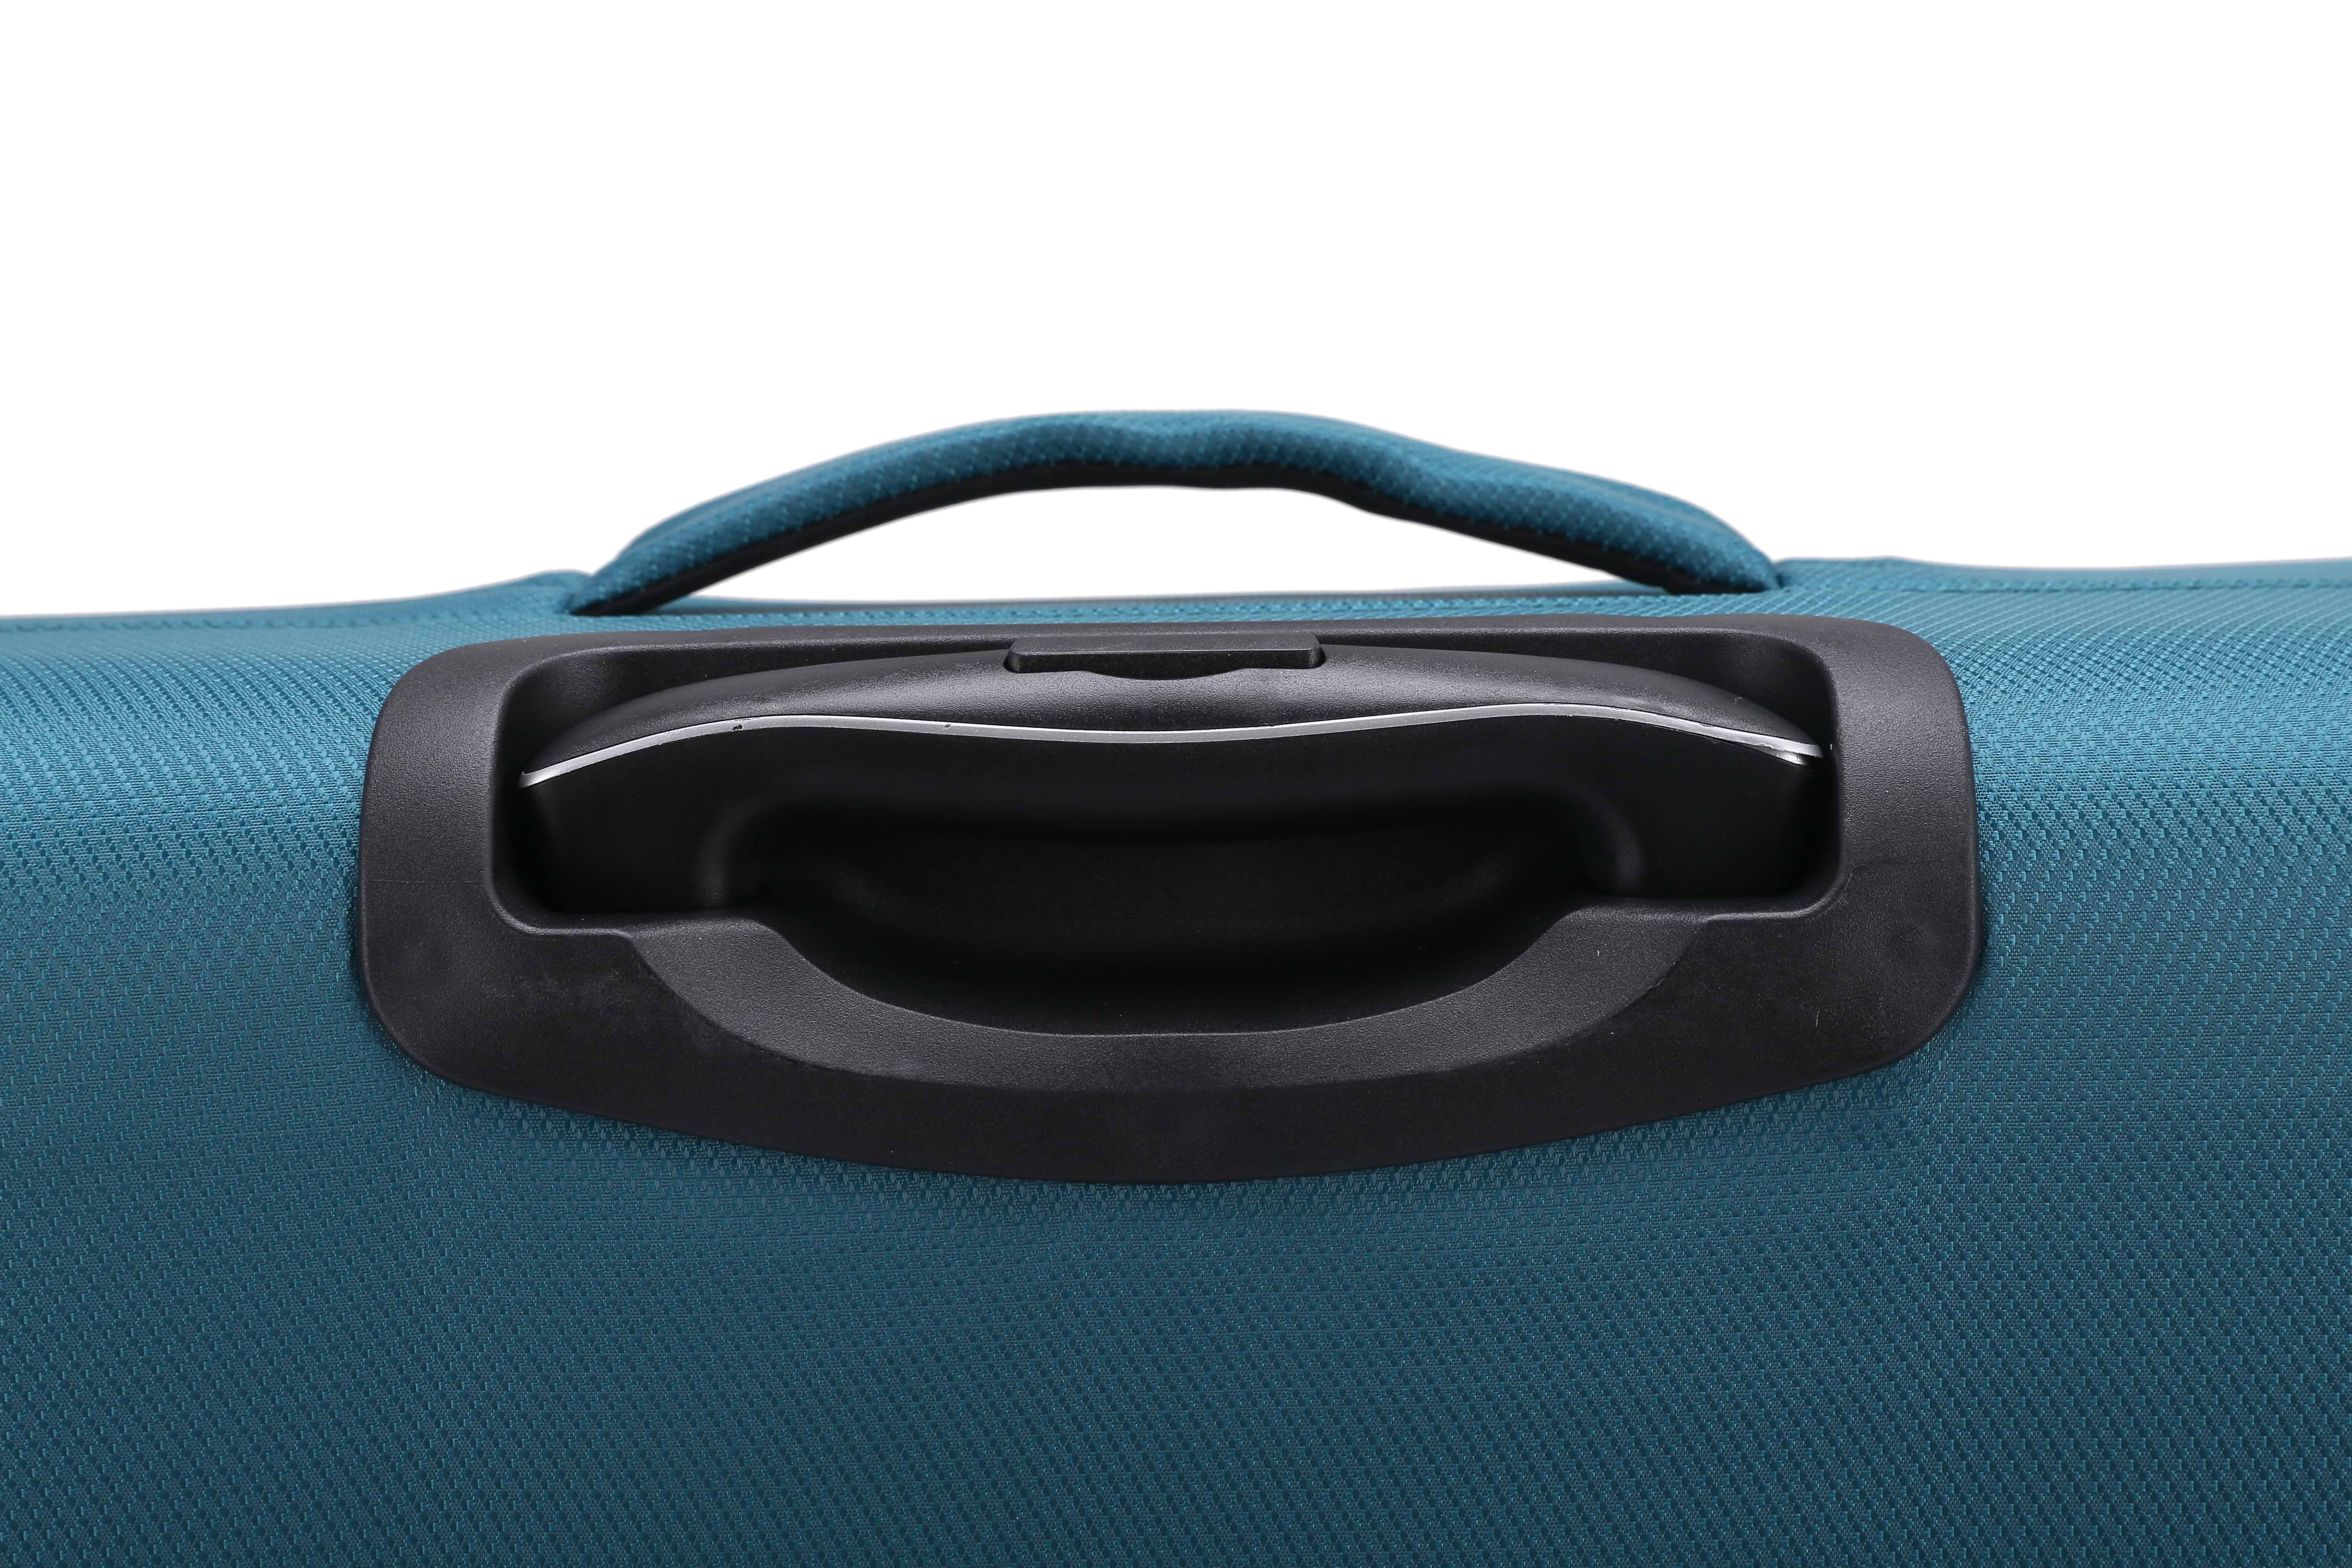 סט מזוודות בד 3 יחידות מידות 28|24|20 נפח מוגדל דגם Castlegate צבע טורקיז Swiss Voyager